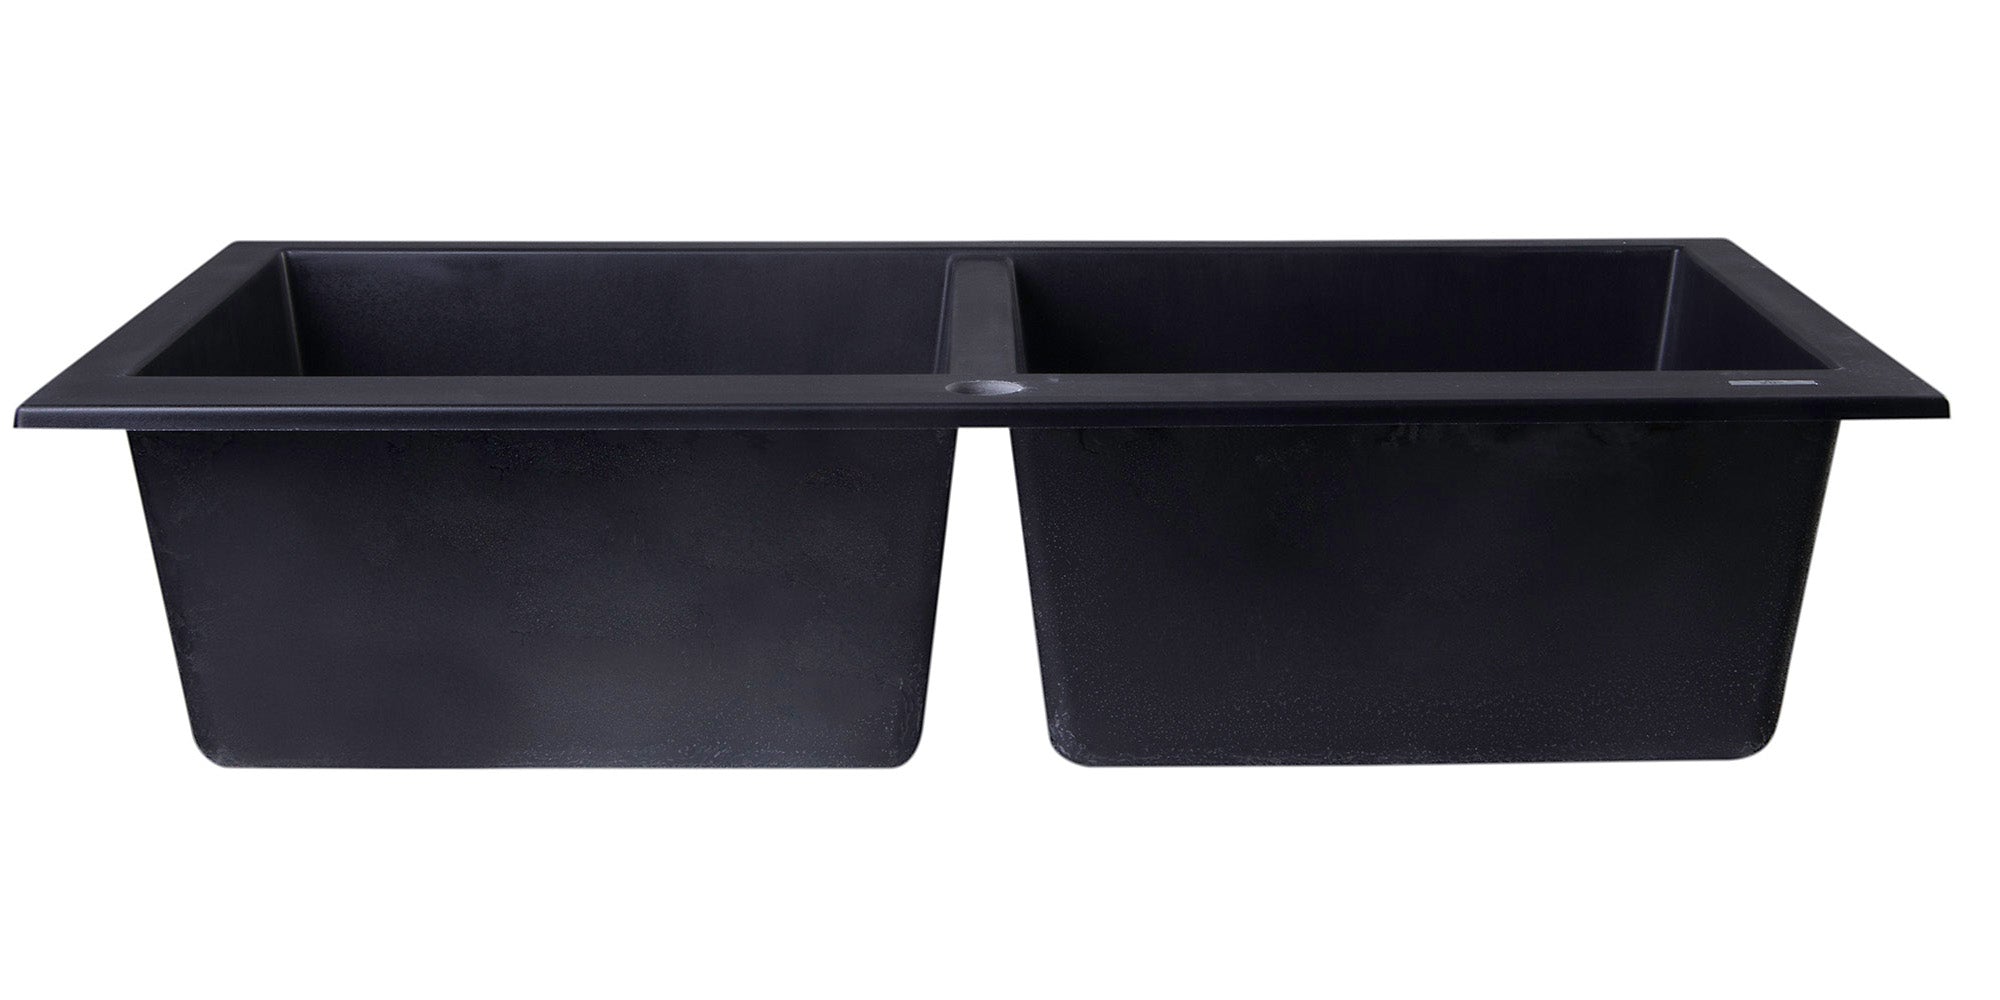 ALFI Brand - Black 34" Drop-In Double Bowl Granite Composite Kitchen Sink | AB3420DI-BLA